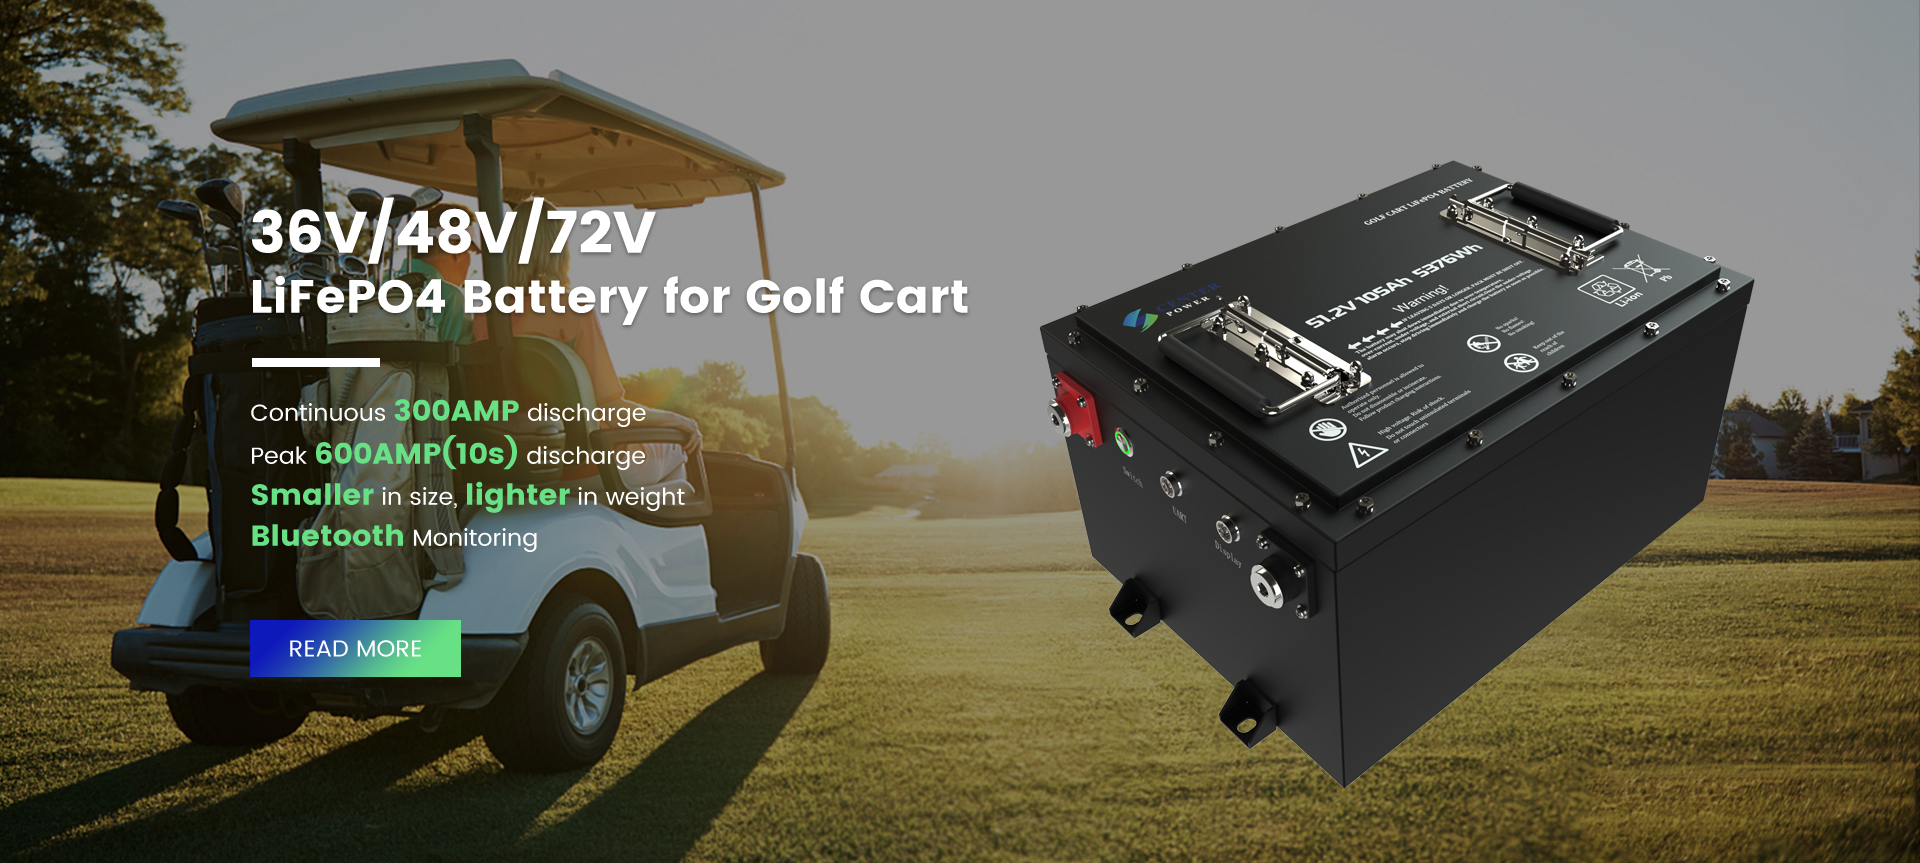 Bateritë e karrocave të golfit LiFePO4